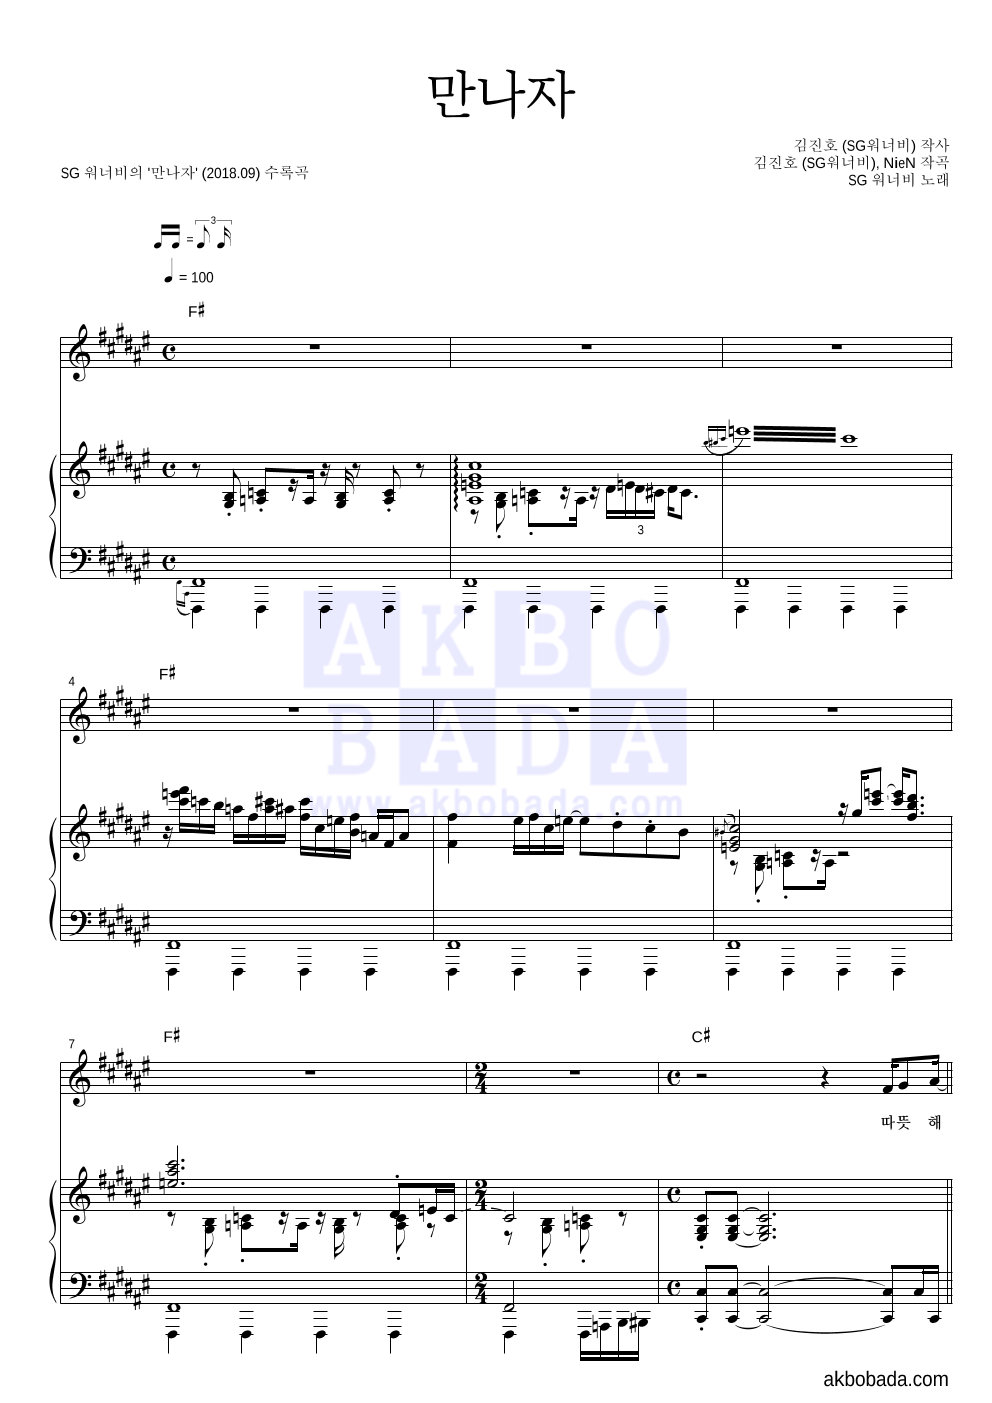 SG워너비 - 만나자 피아노 3단 악보 